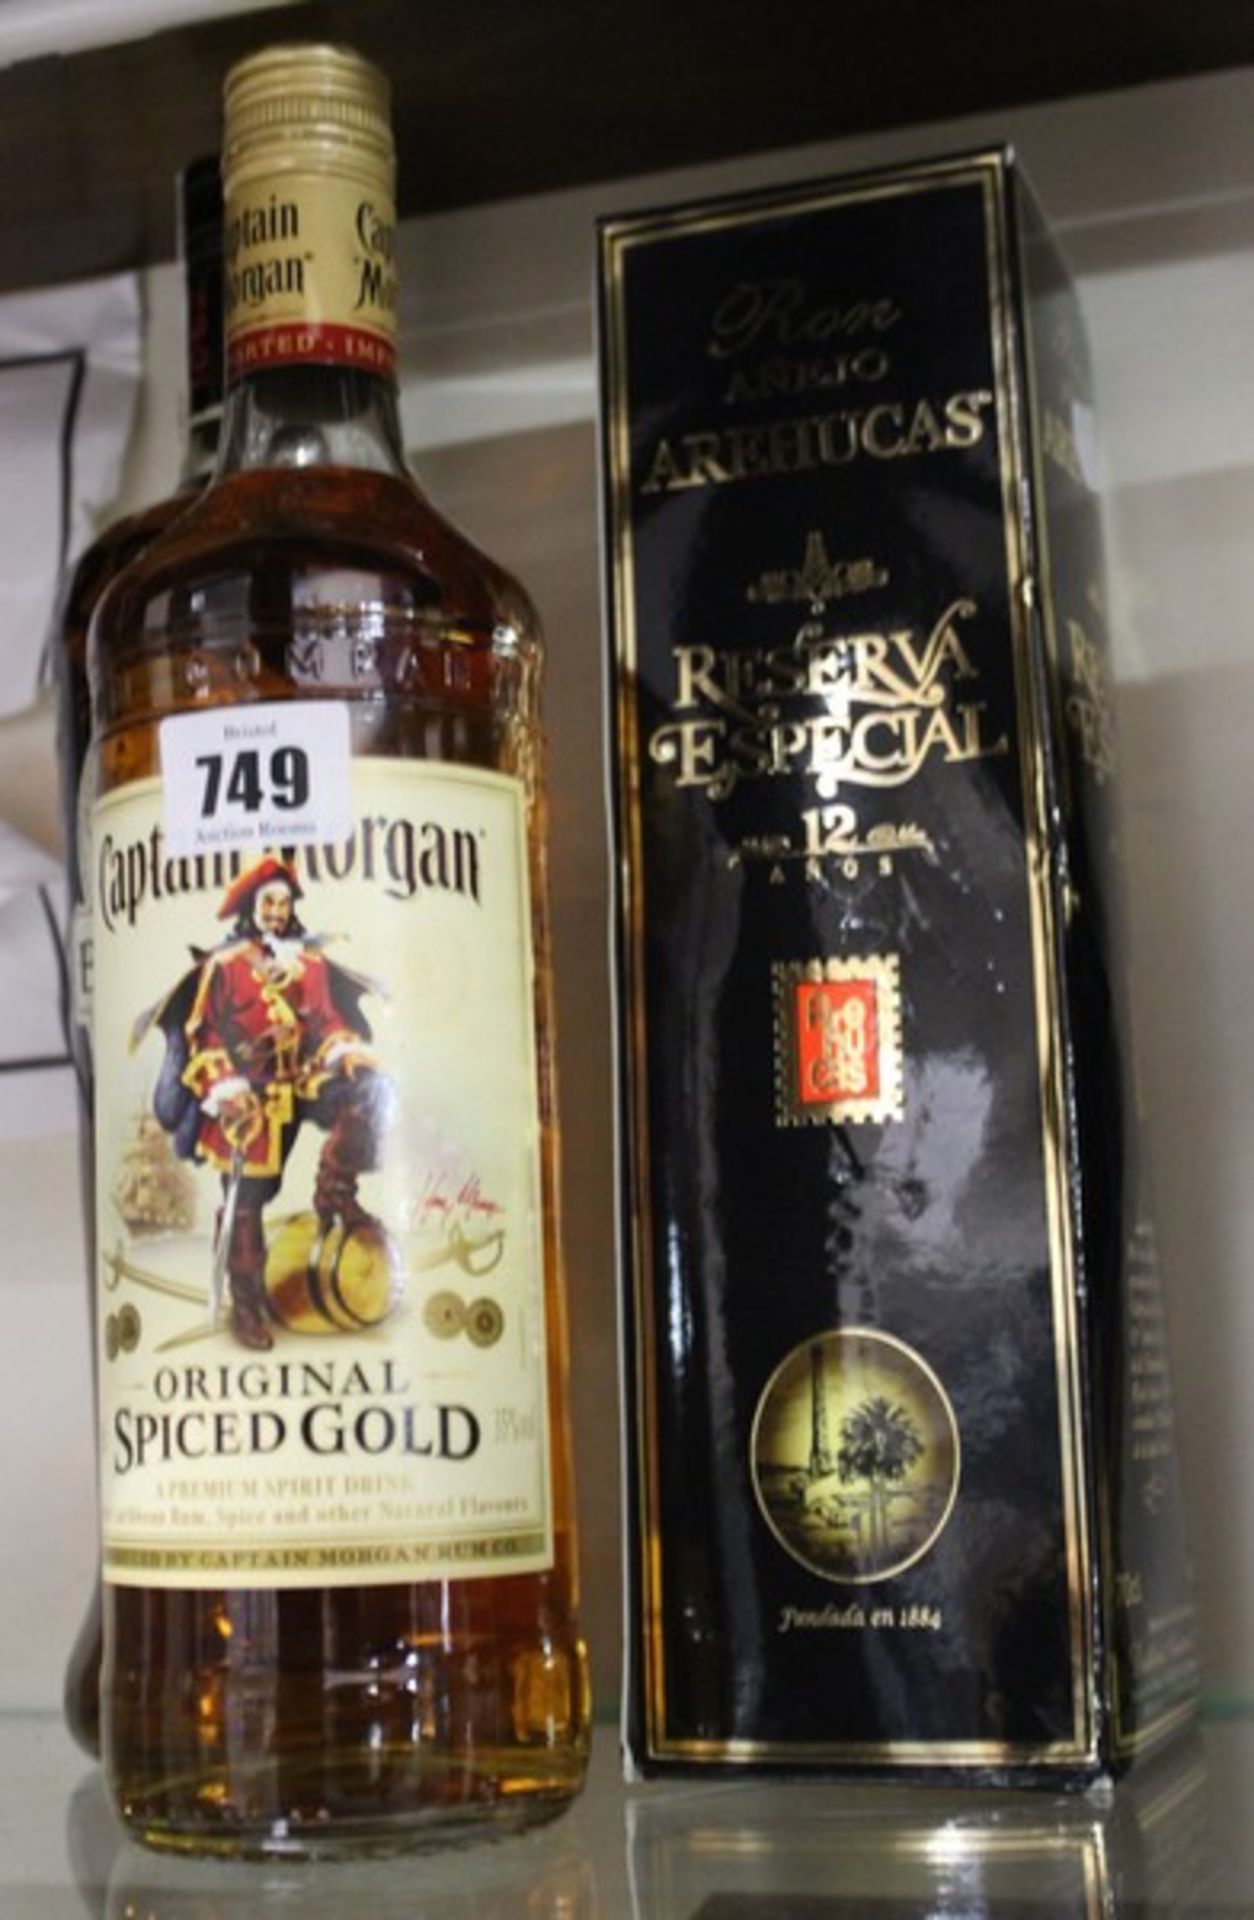 Ron Anjelo Arehucas Reserva Especial (700ml), Captain Morgan Original Spiced Gold (750ml) and